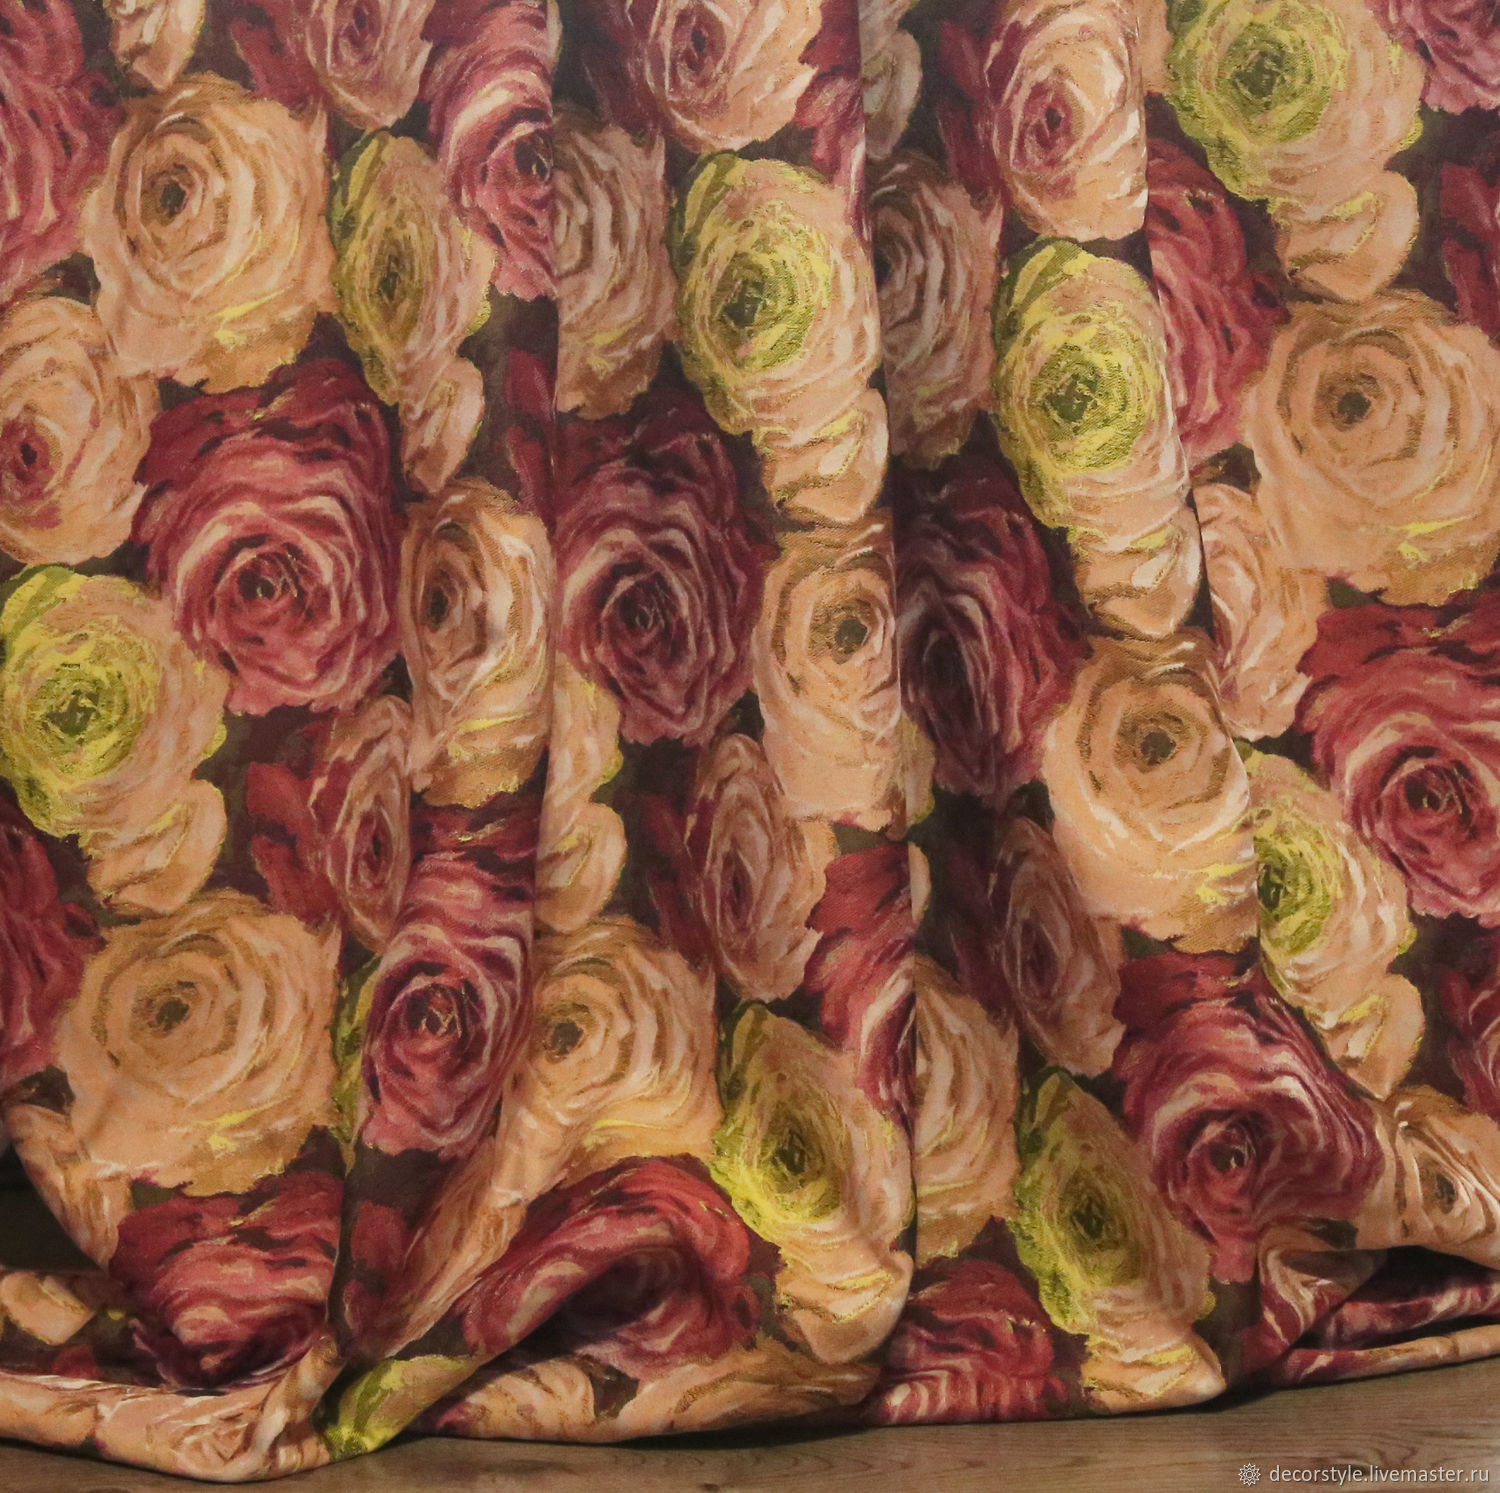 Купить материал розы. Ткань в розочку. Ткань с розами. Ткань портьерная розы. Ткань для штор с розами.